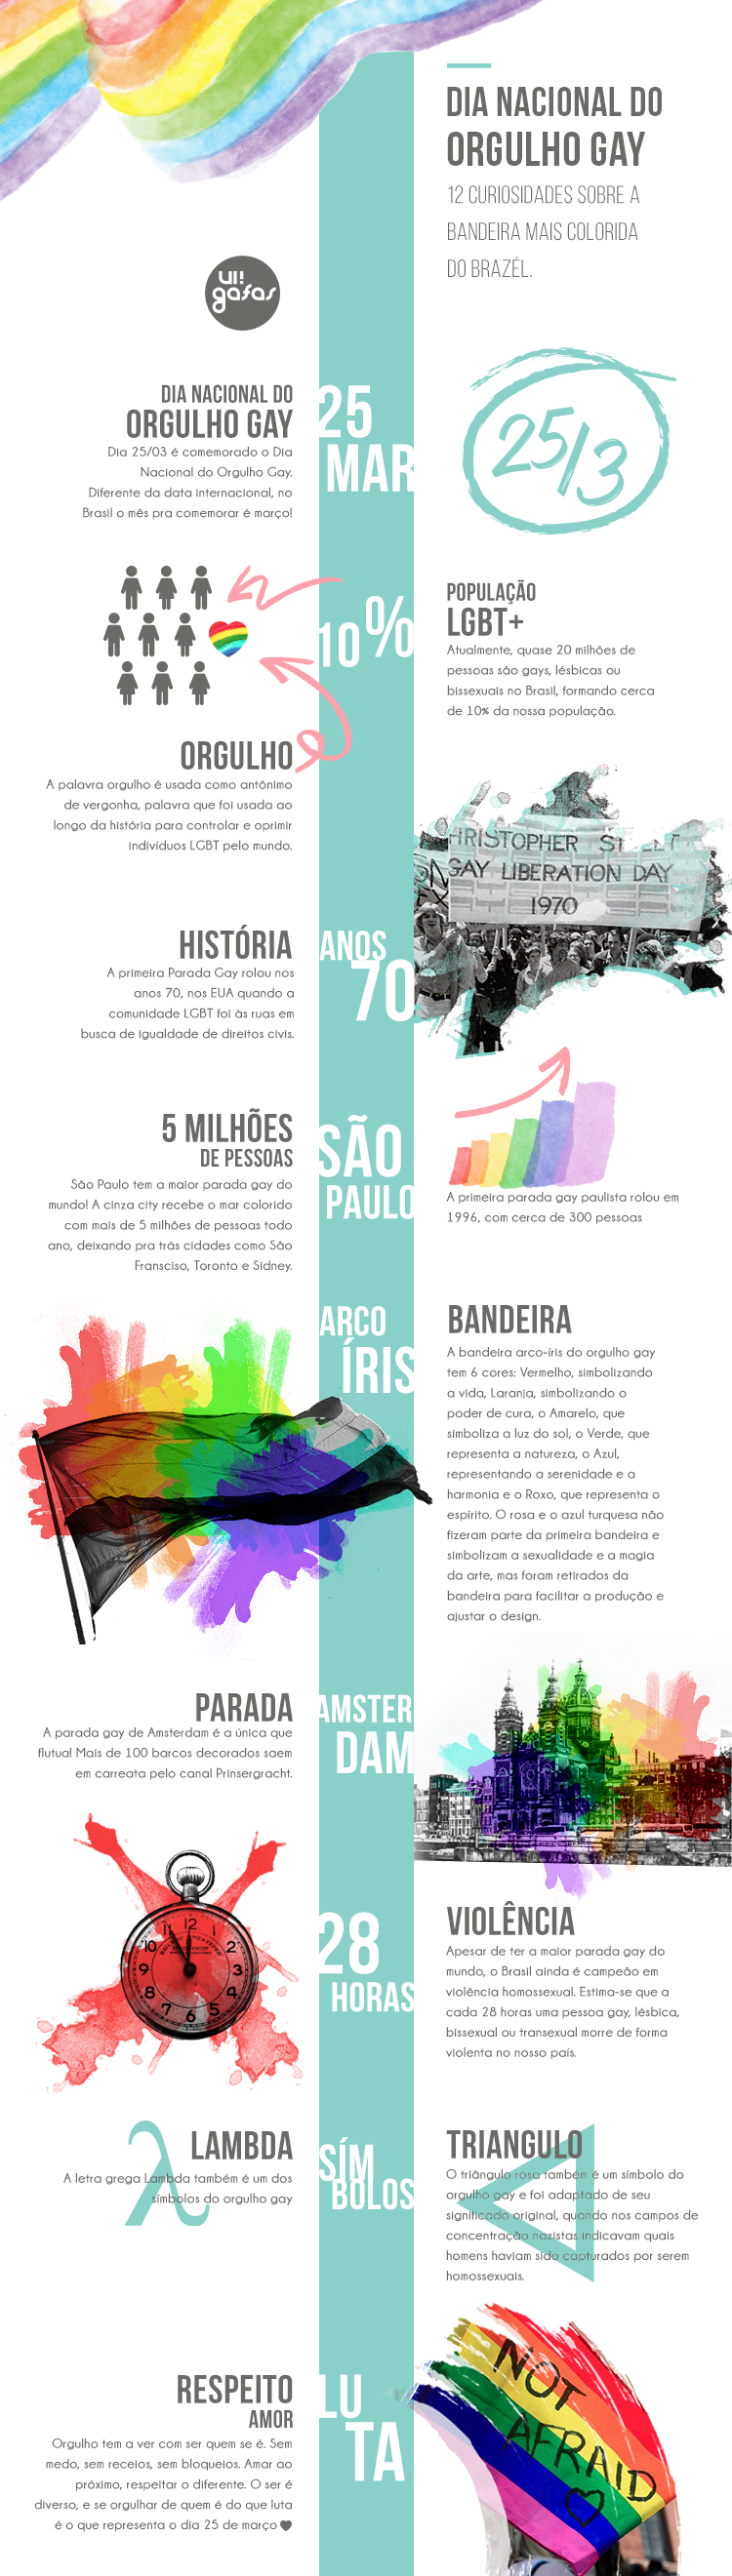 12 curiosidades sobre o Dia Nacional do Orgulho Gay <3